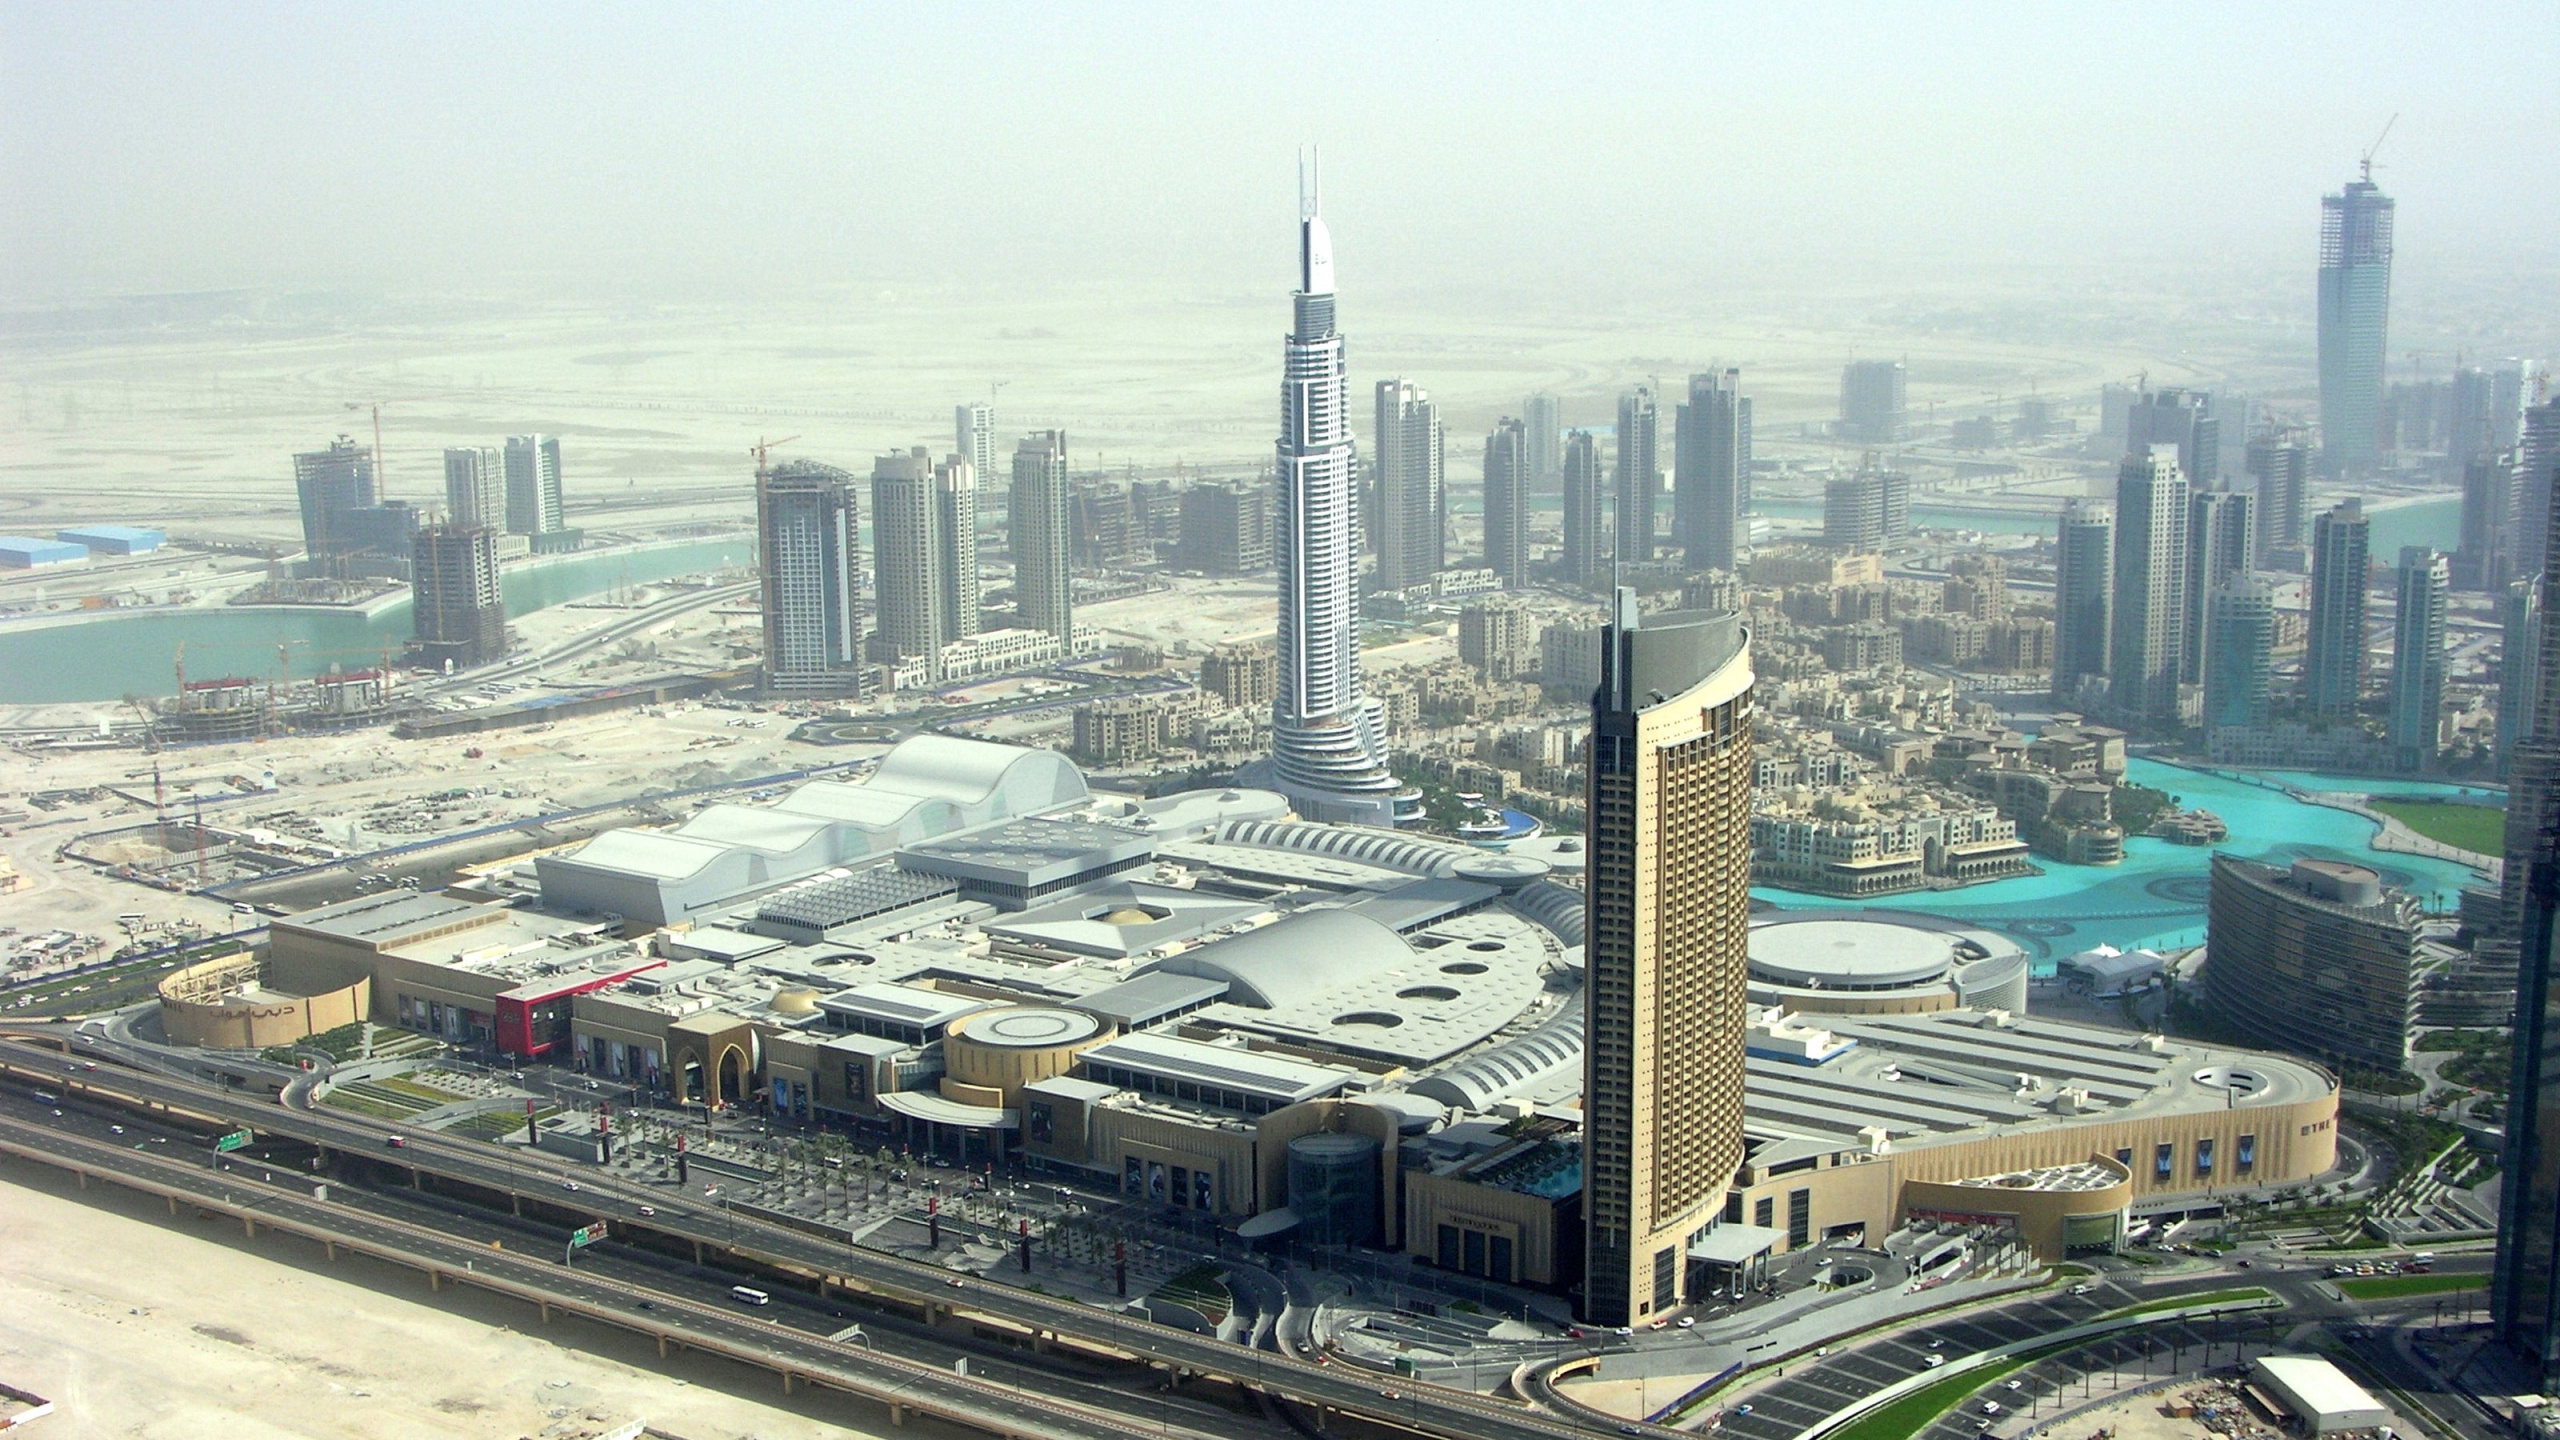 迪拜购物中心, 城市景观, 城市, 大都会, 塔块 壁纸 2560x1440 允许